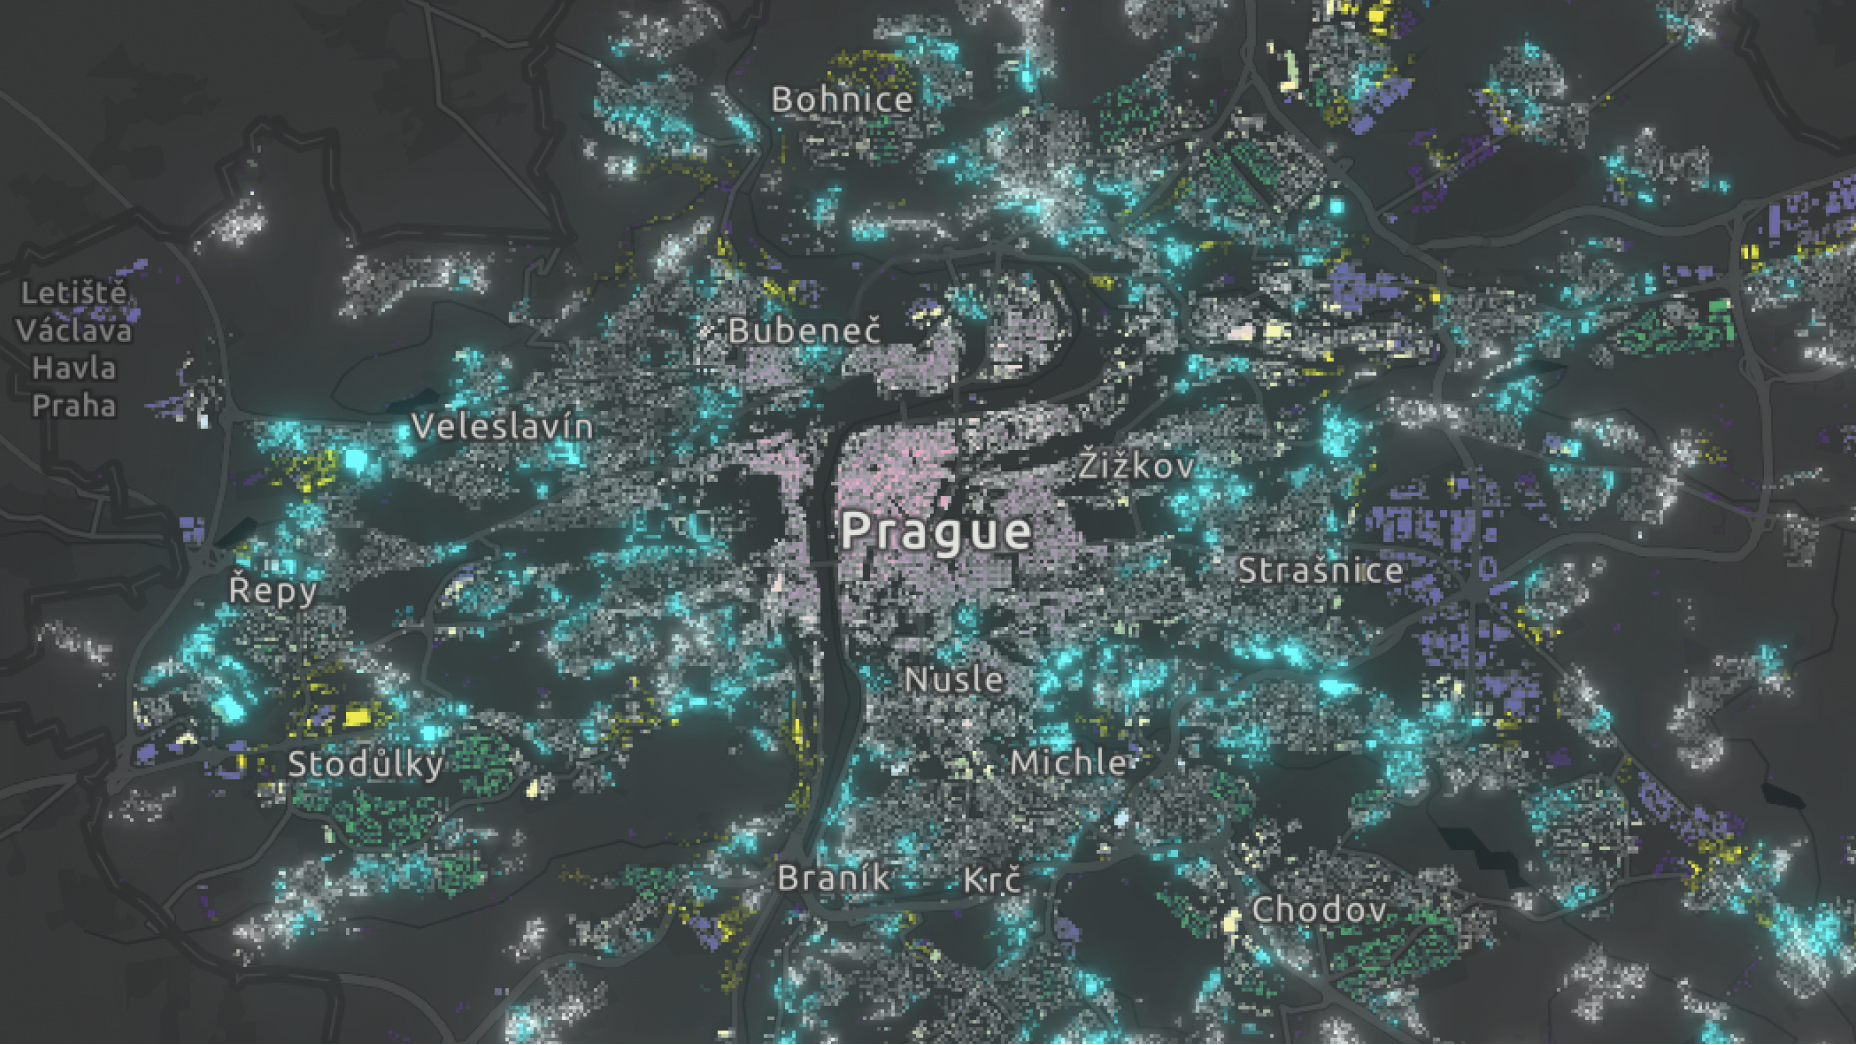 Karte von Prag im dunklen Design mit Punkten in Neonfarbe, die Orte der urbanen Vielfalt markieren